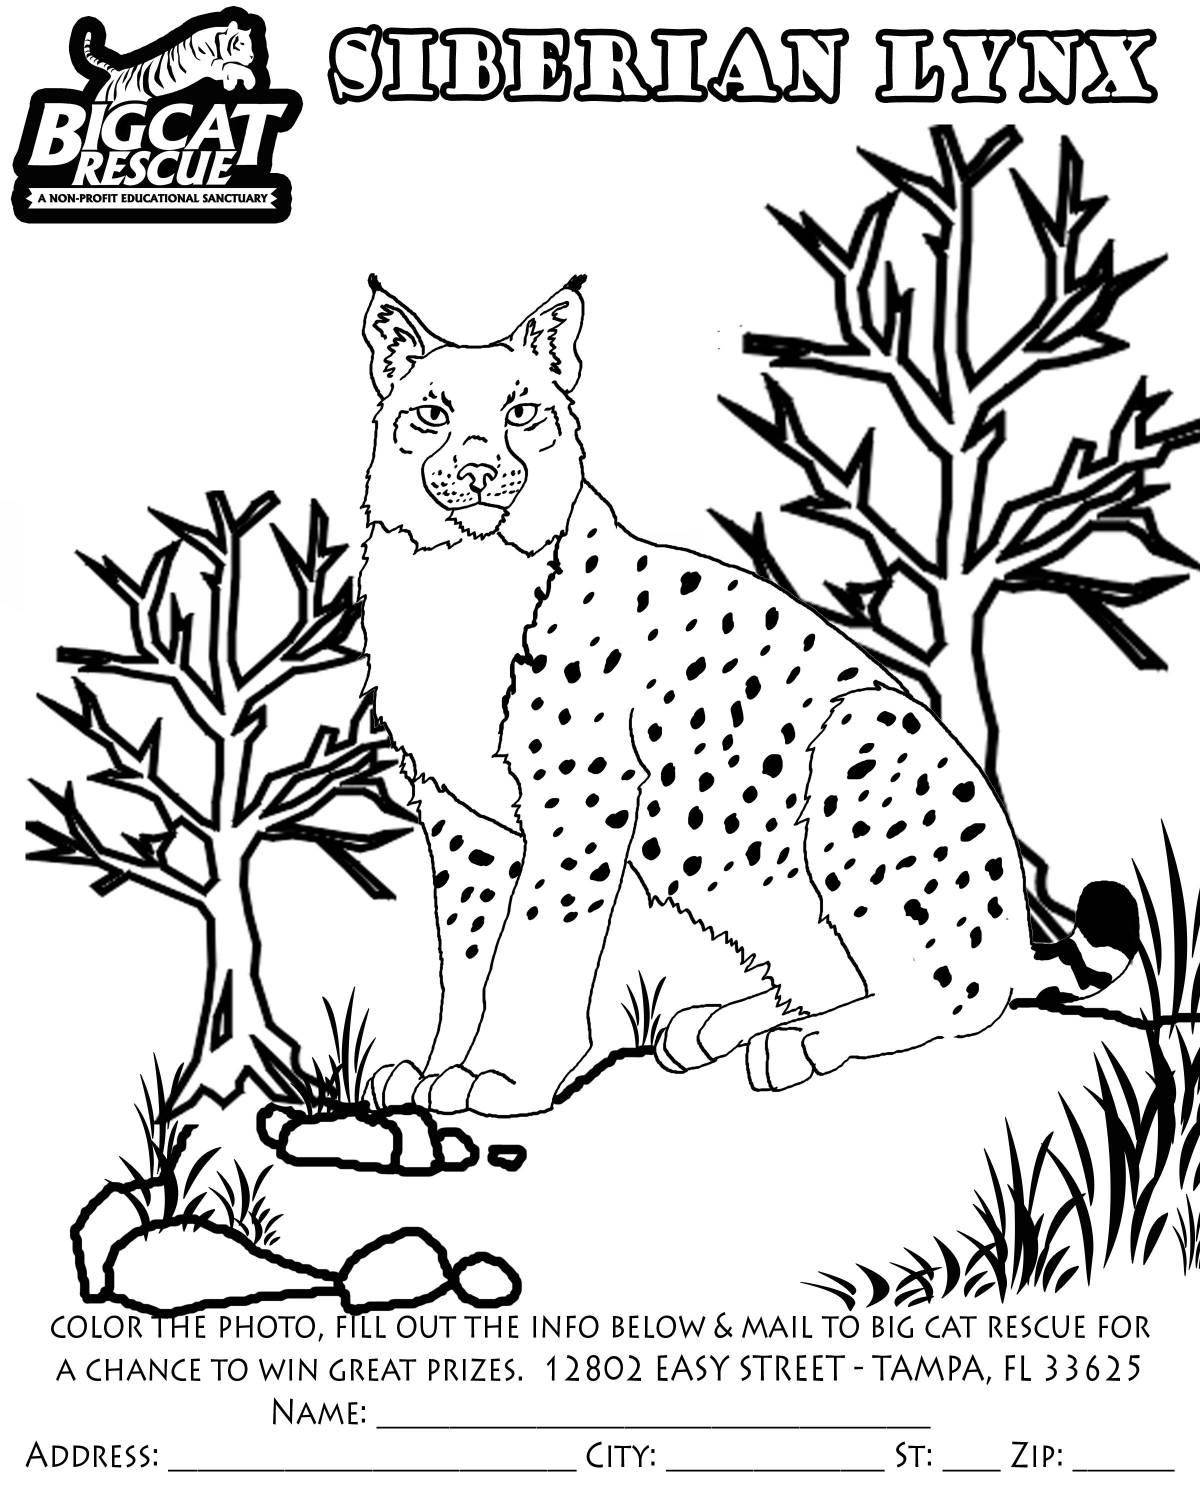 Adorable Caucasian lynx coloring book